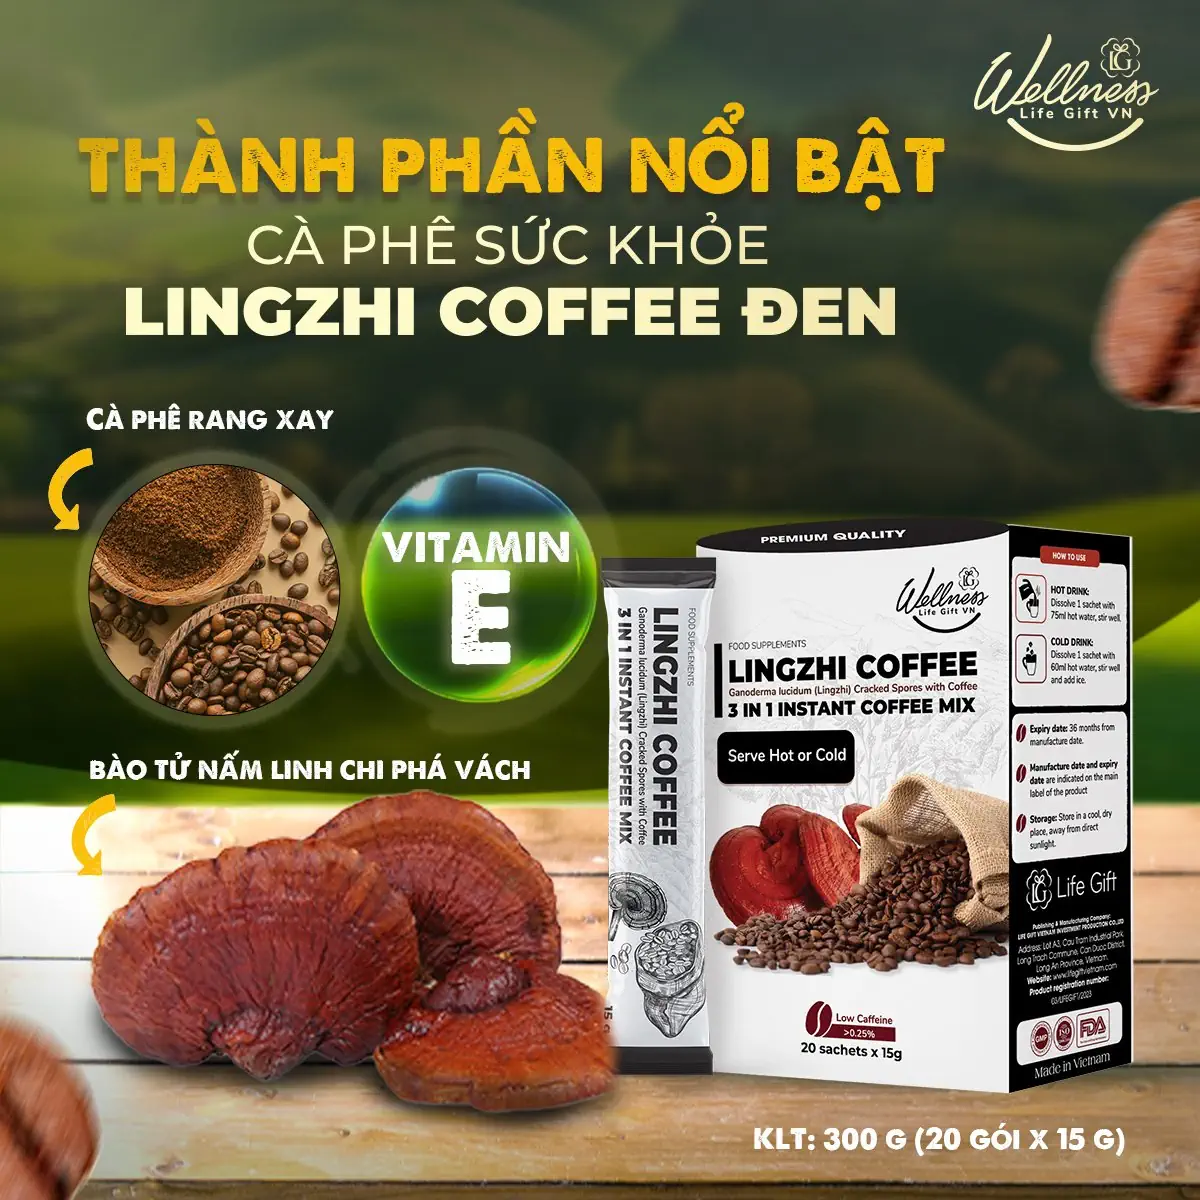 Thành Phần Nổi Bật Cà Phê Sức Khỏe Lingzhi Coffee đen - Droppii Mall